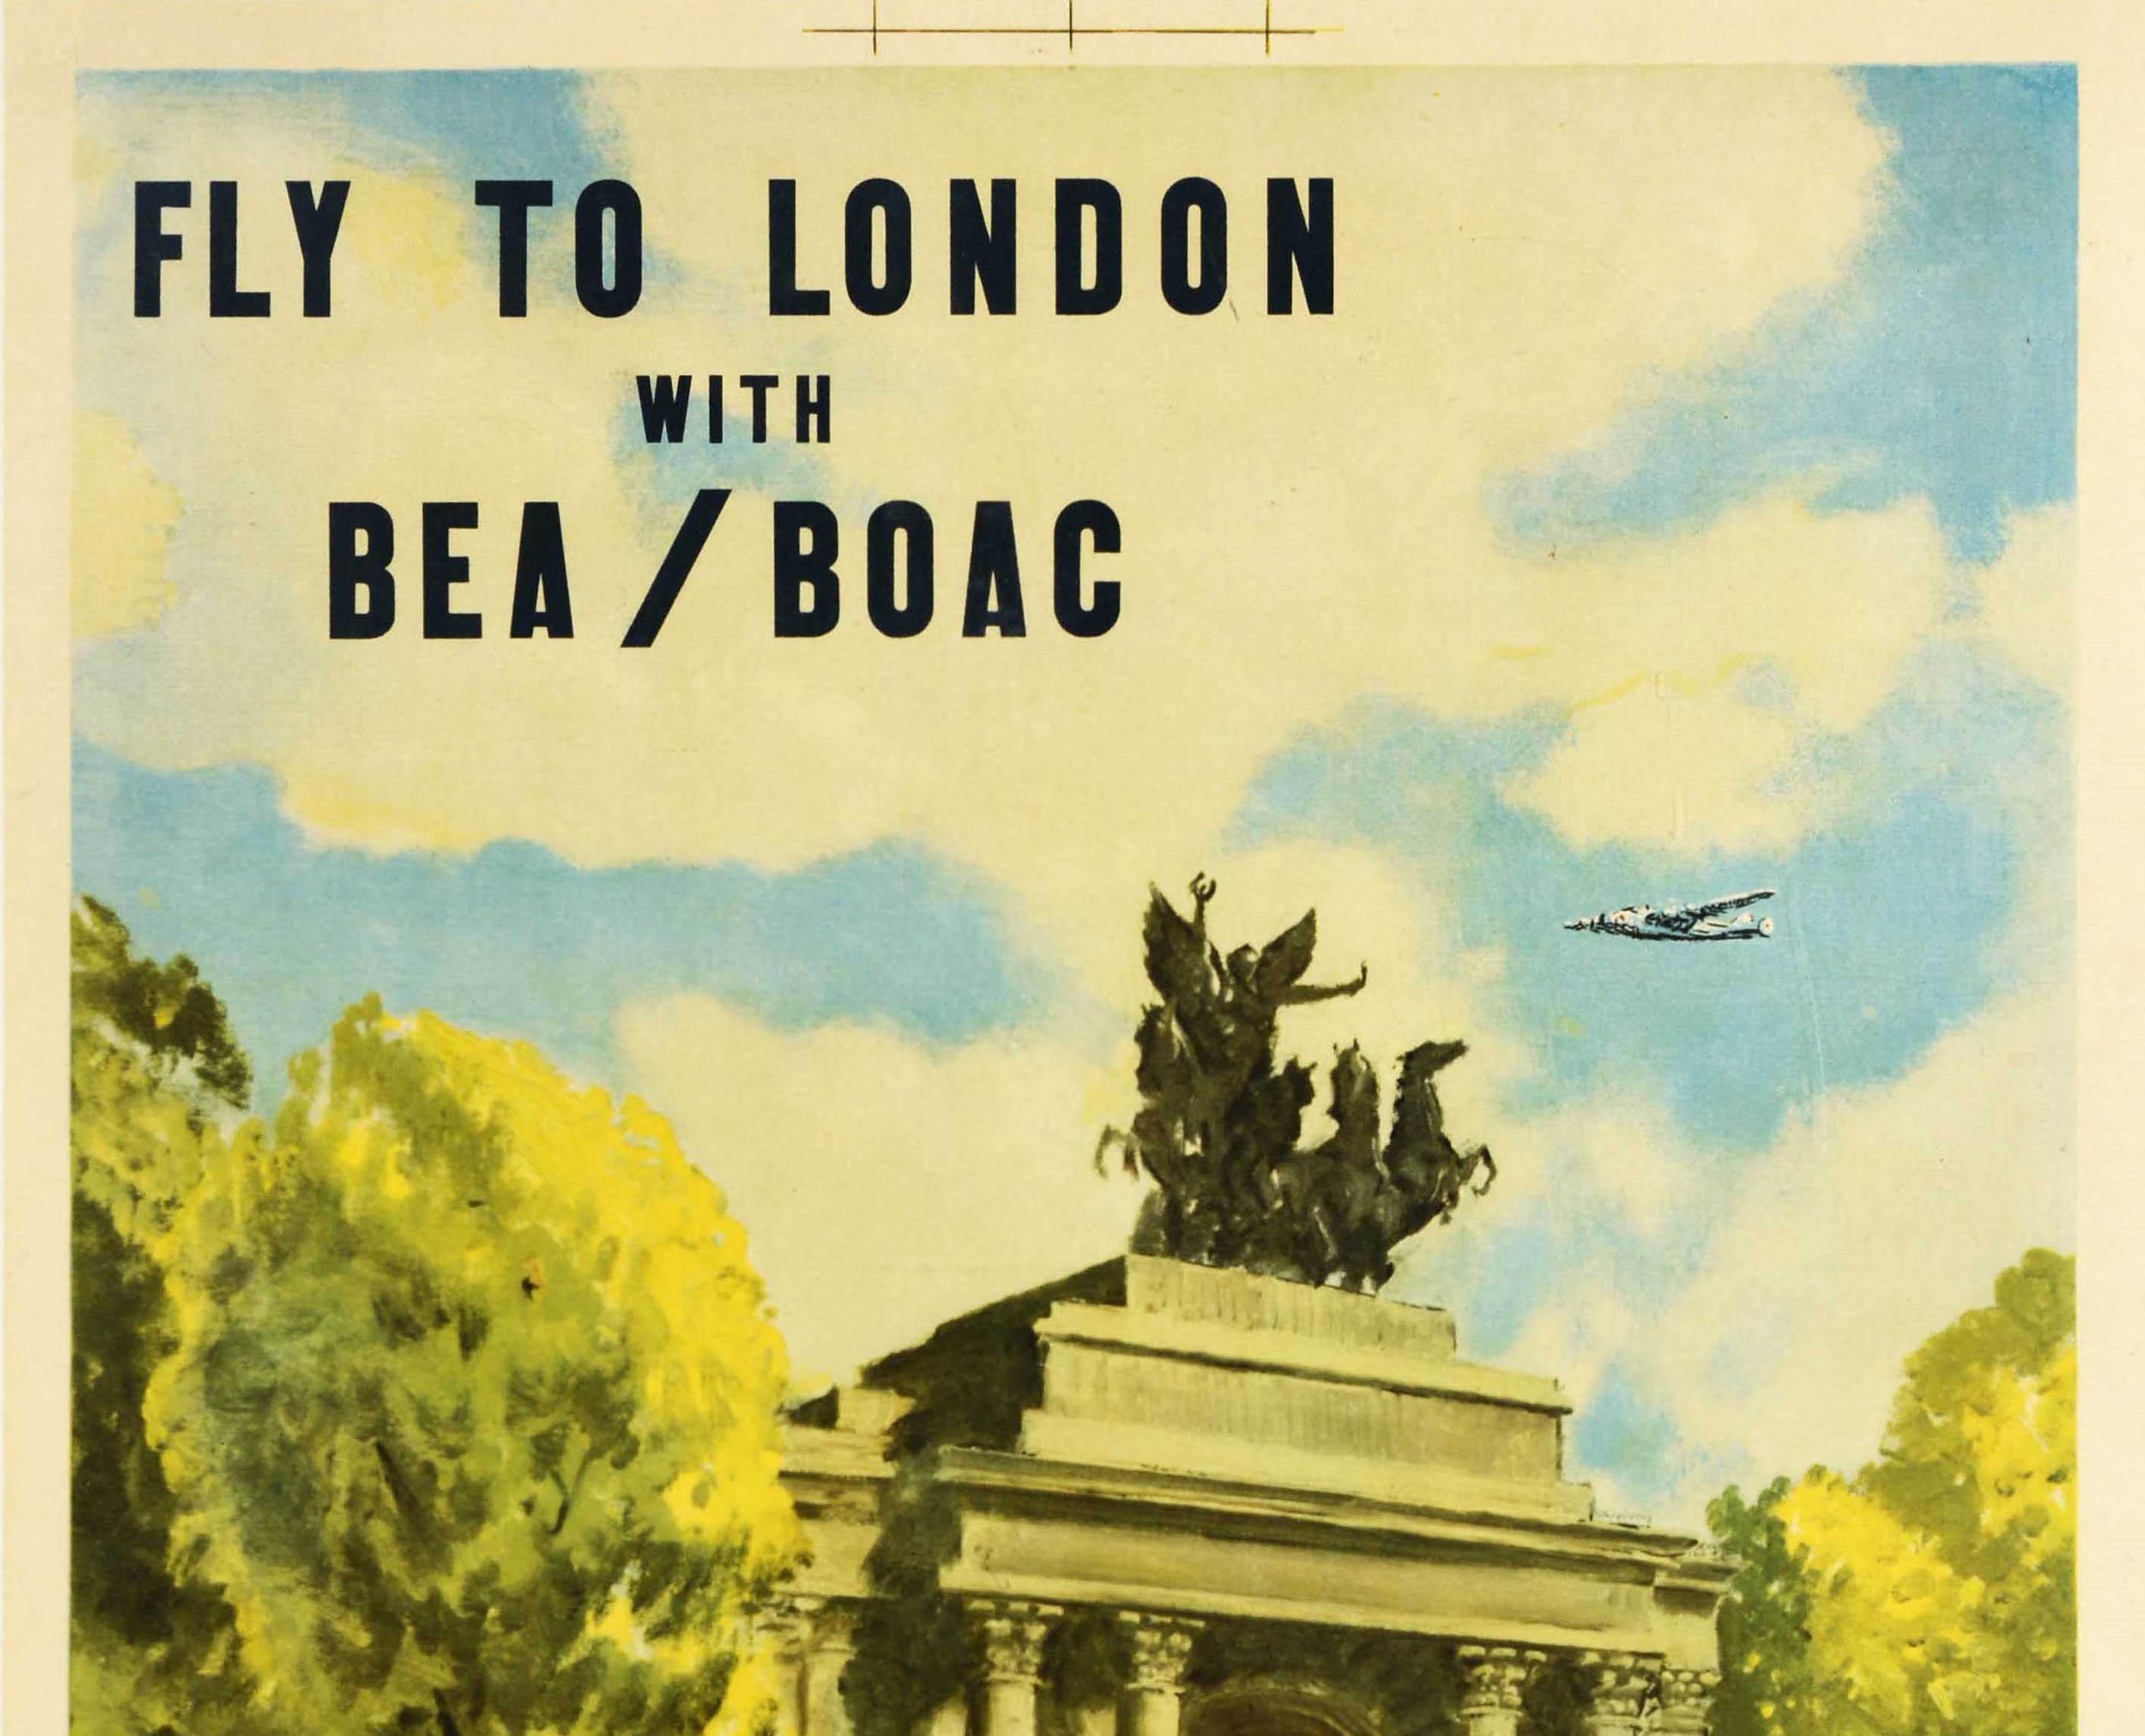 Affiche de voyage originale d'époque pour British European Airways et British Overseas Airways Corporation - Fly to London with BEA / BOAC - avec une image colorée de l'artiste et illustrateur britannique Clive Uptton (1911-2006) représentant un